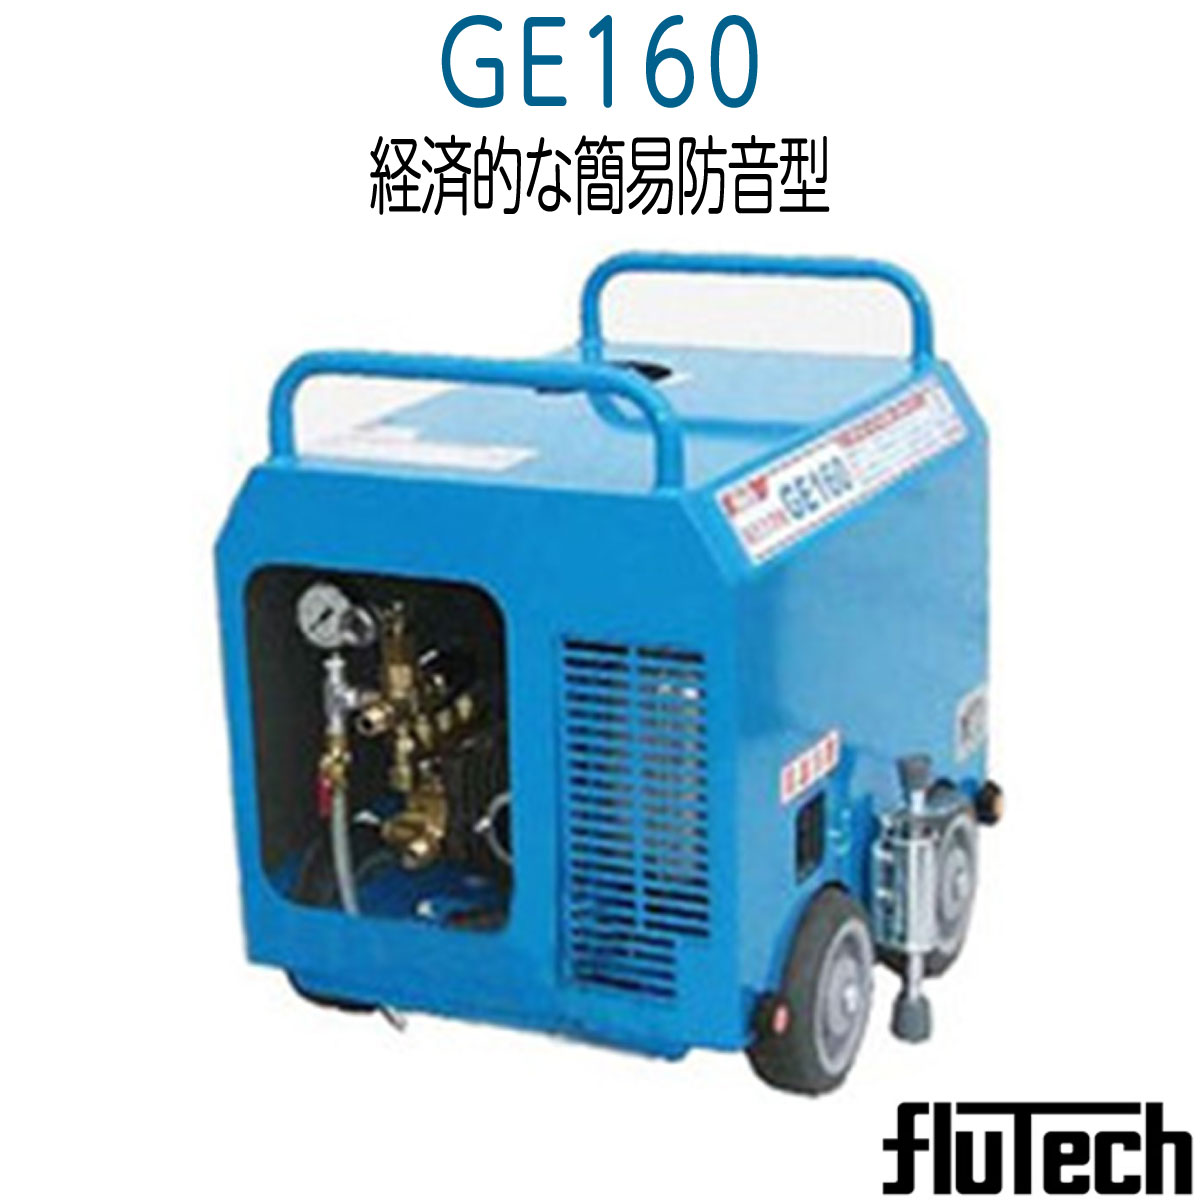 GE160 フルテック防音型高圧洗浄機 GE160